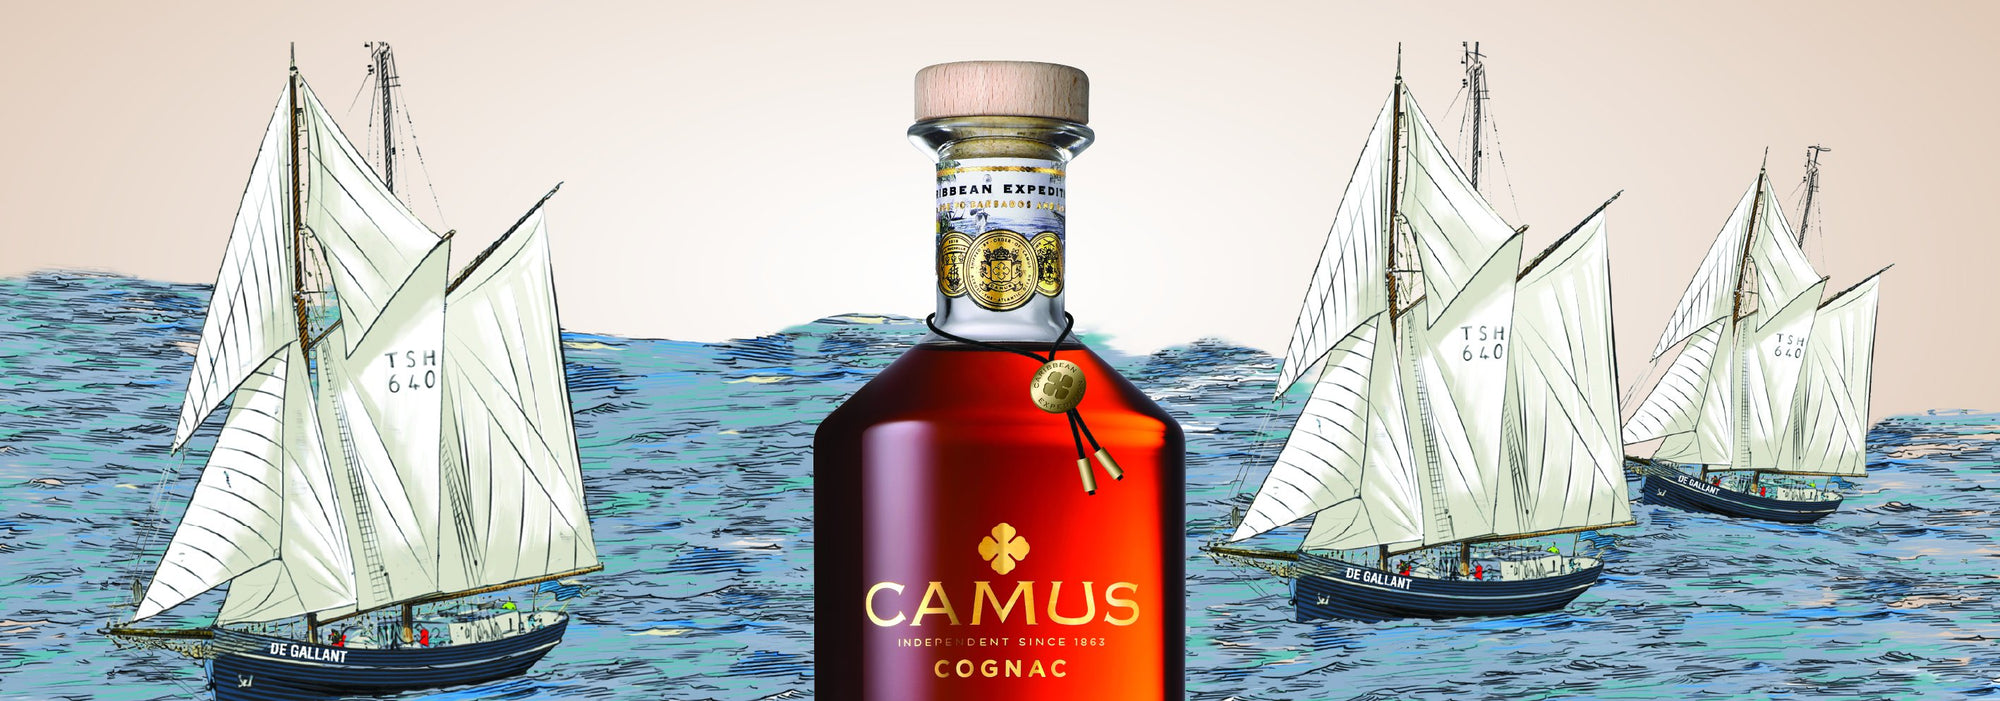 Pourquoi Caribbean Expedition est une primauté dans la catégorie Cognac (Ep. 1/2)